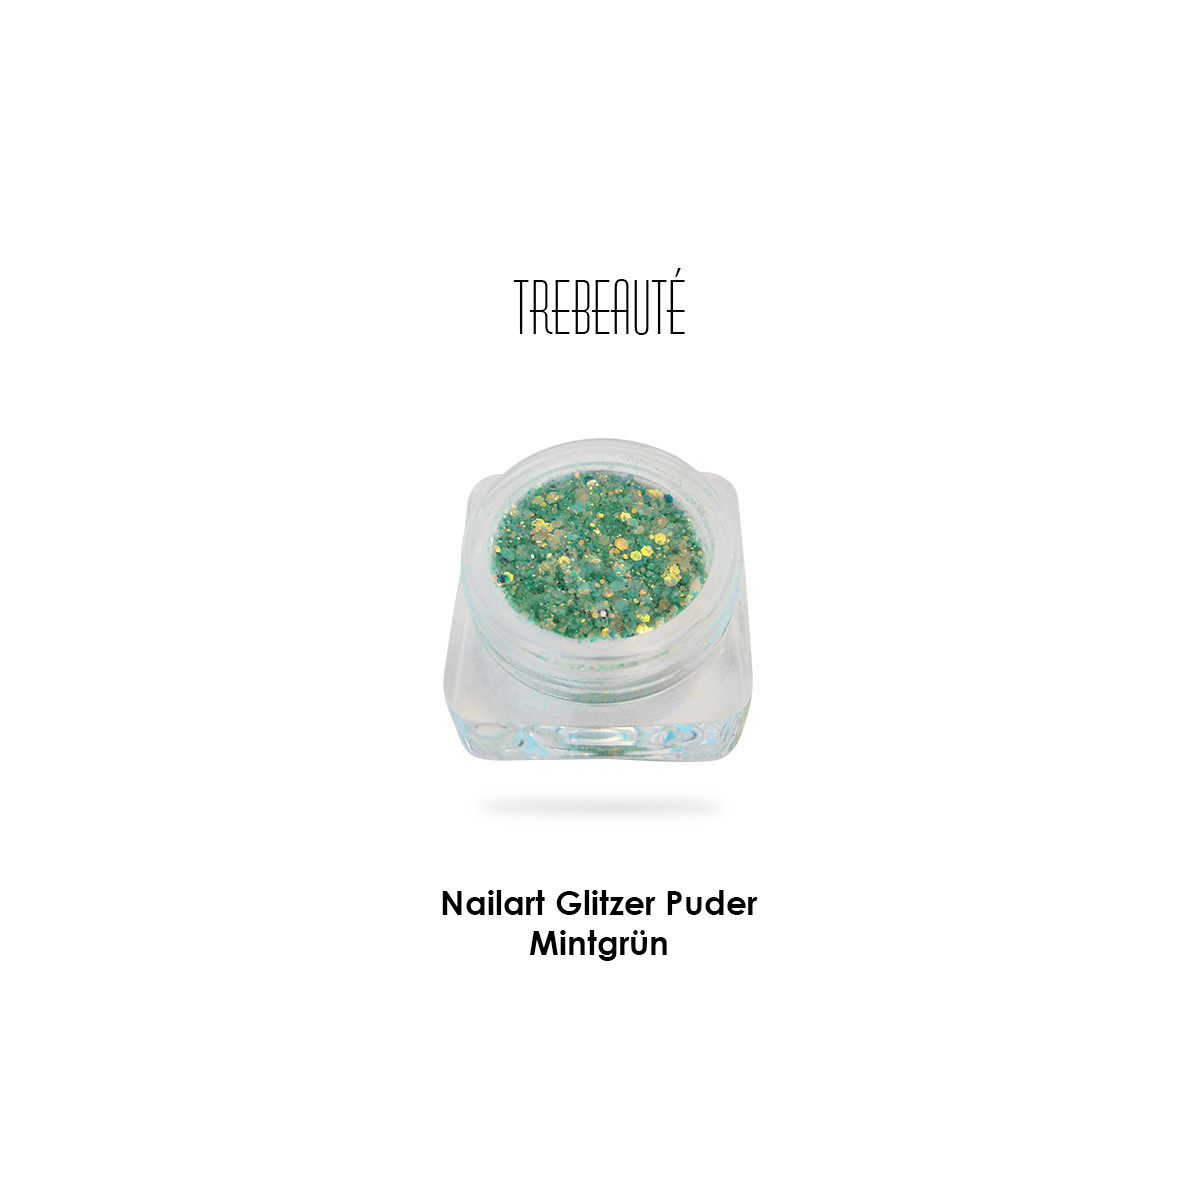 Nailart Glitzer Puder & Glitterstaub, Mintgrün